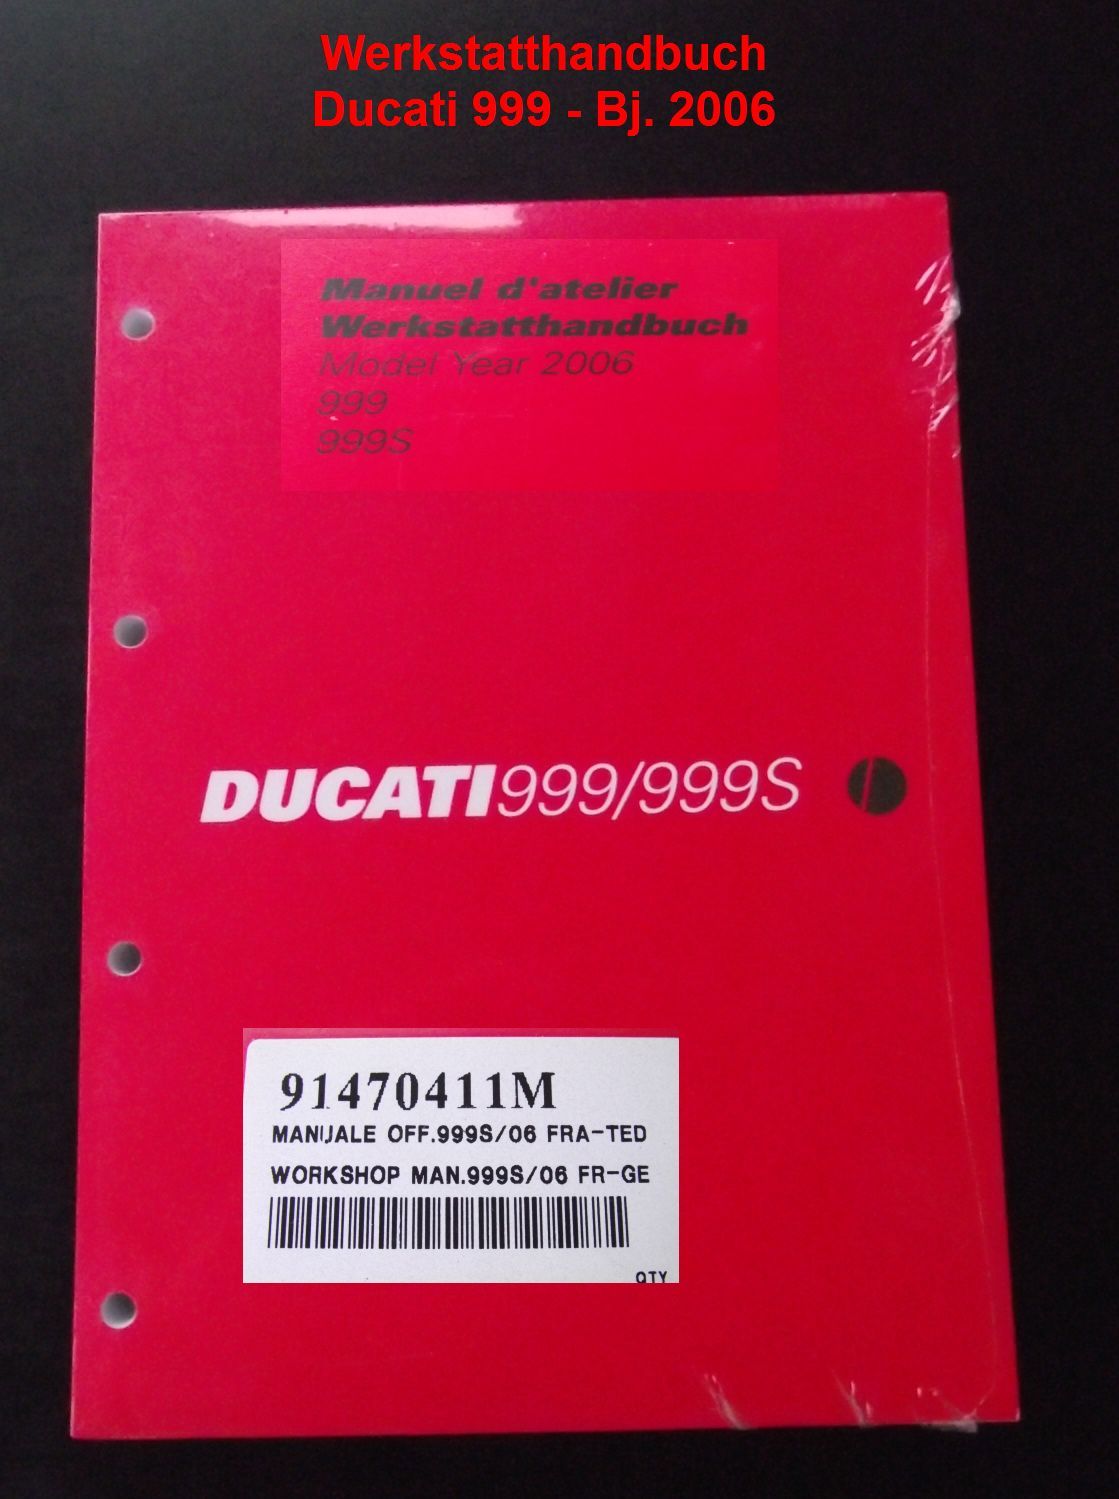 Werkstatthandbuch Ducati 999, S, 2006, 91470411M, Handbuch, manuel a